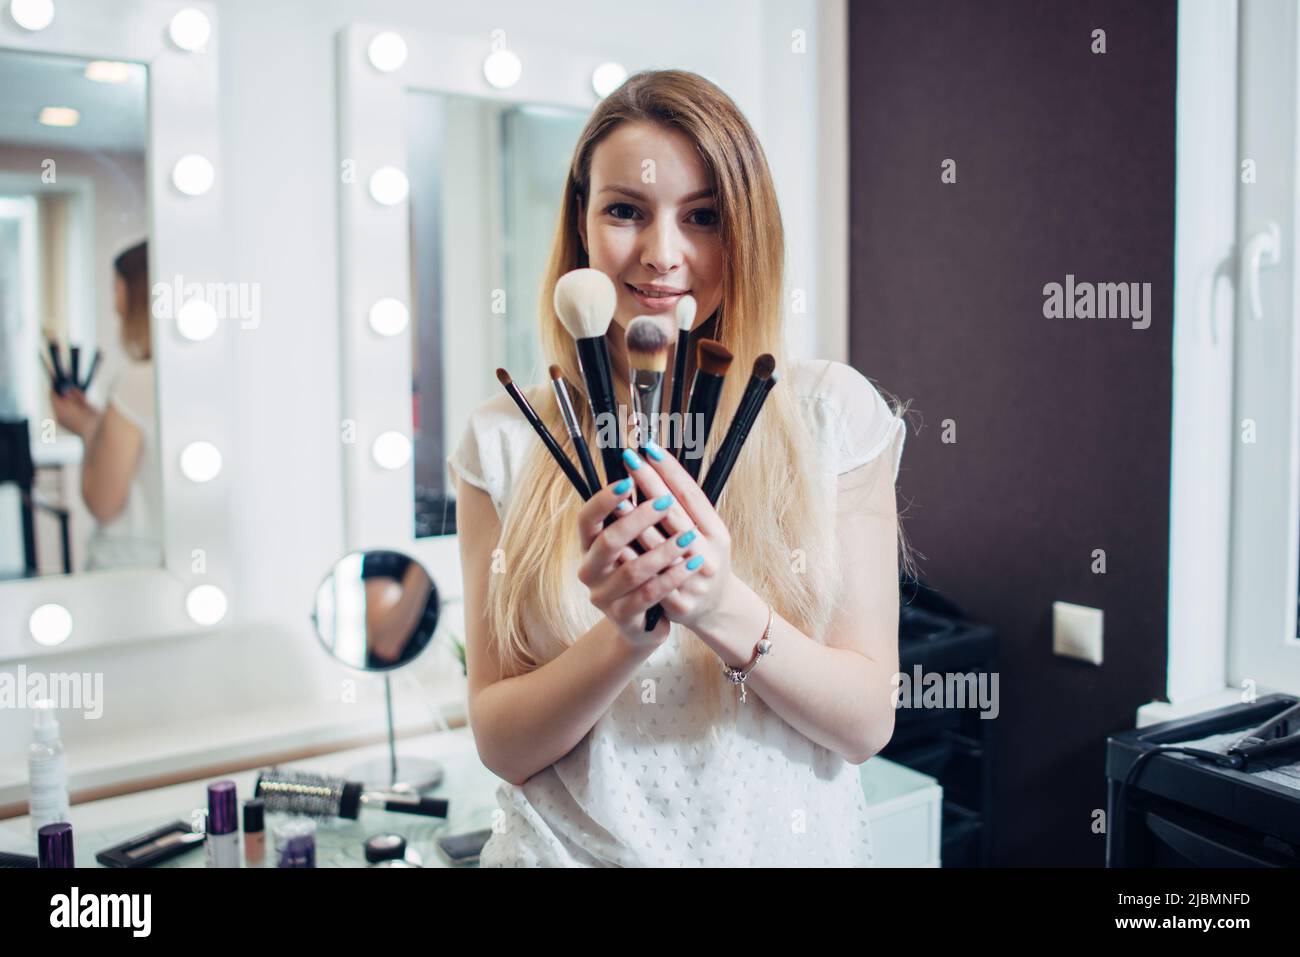 Ritratto di giovani artisti make-up che mostrano le sue spazzole guardando la macchina fotografica in studio di bellezza. Foto Stock